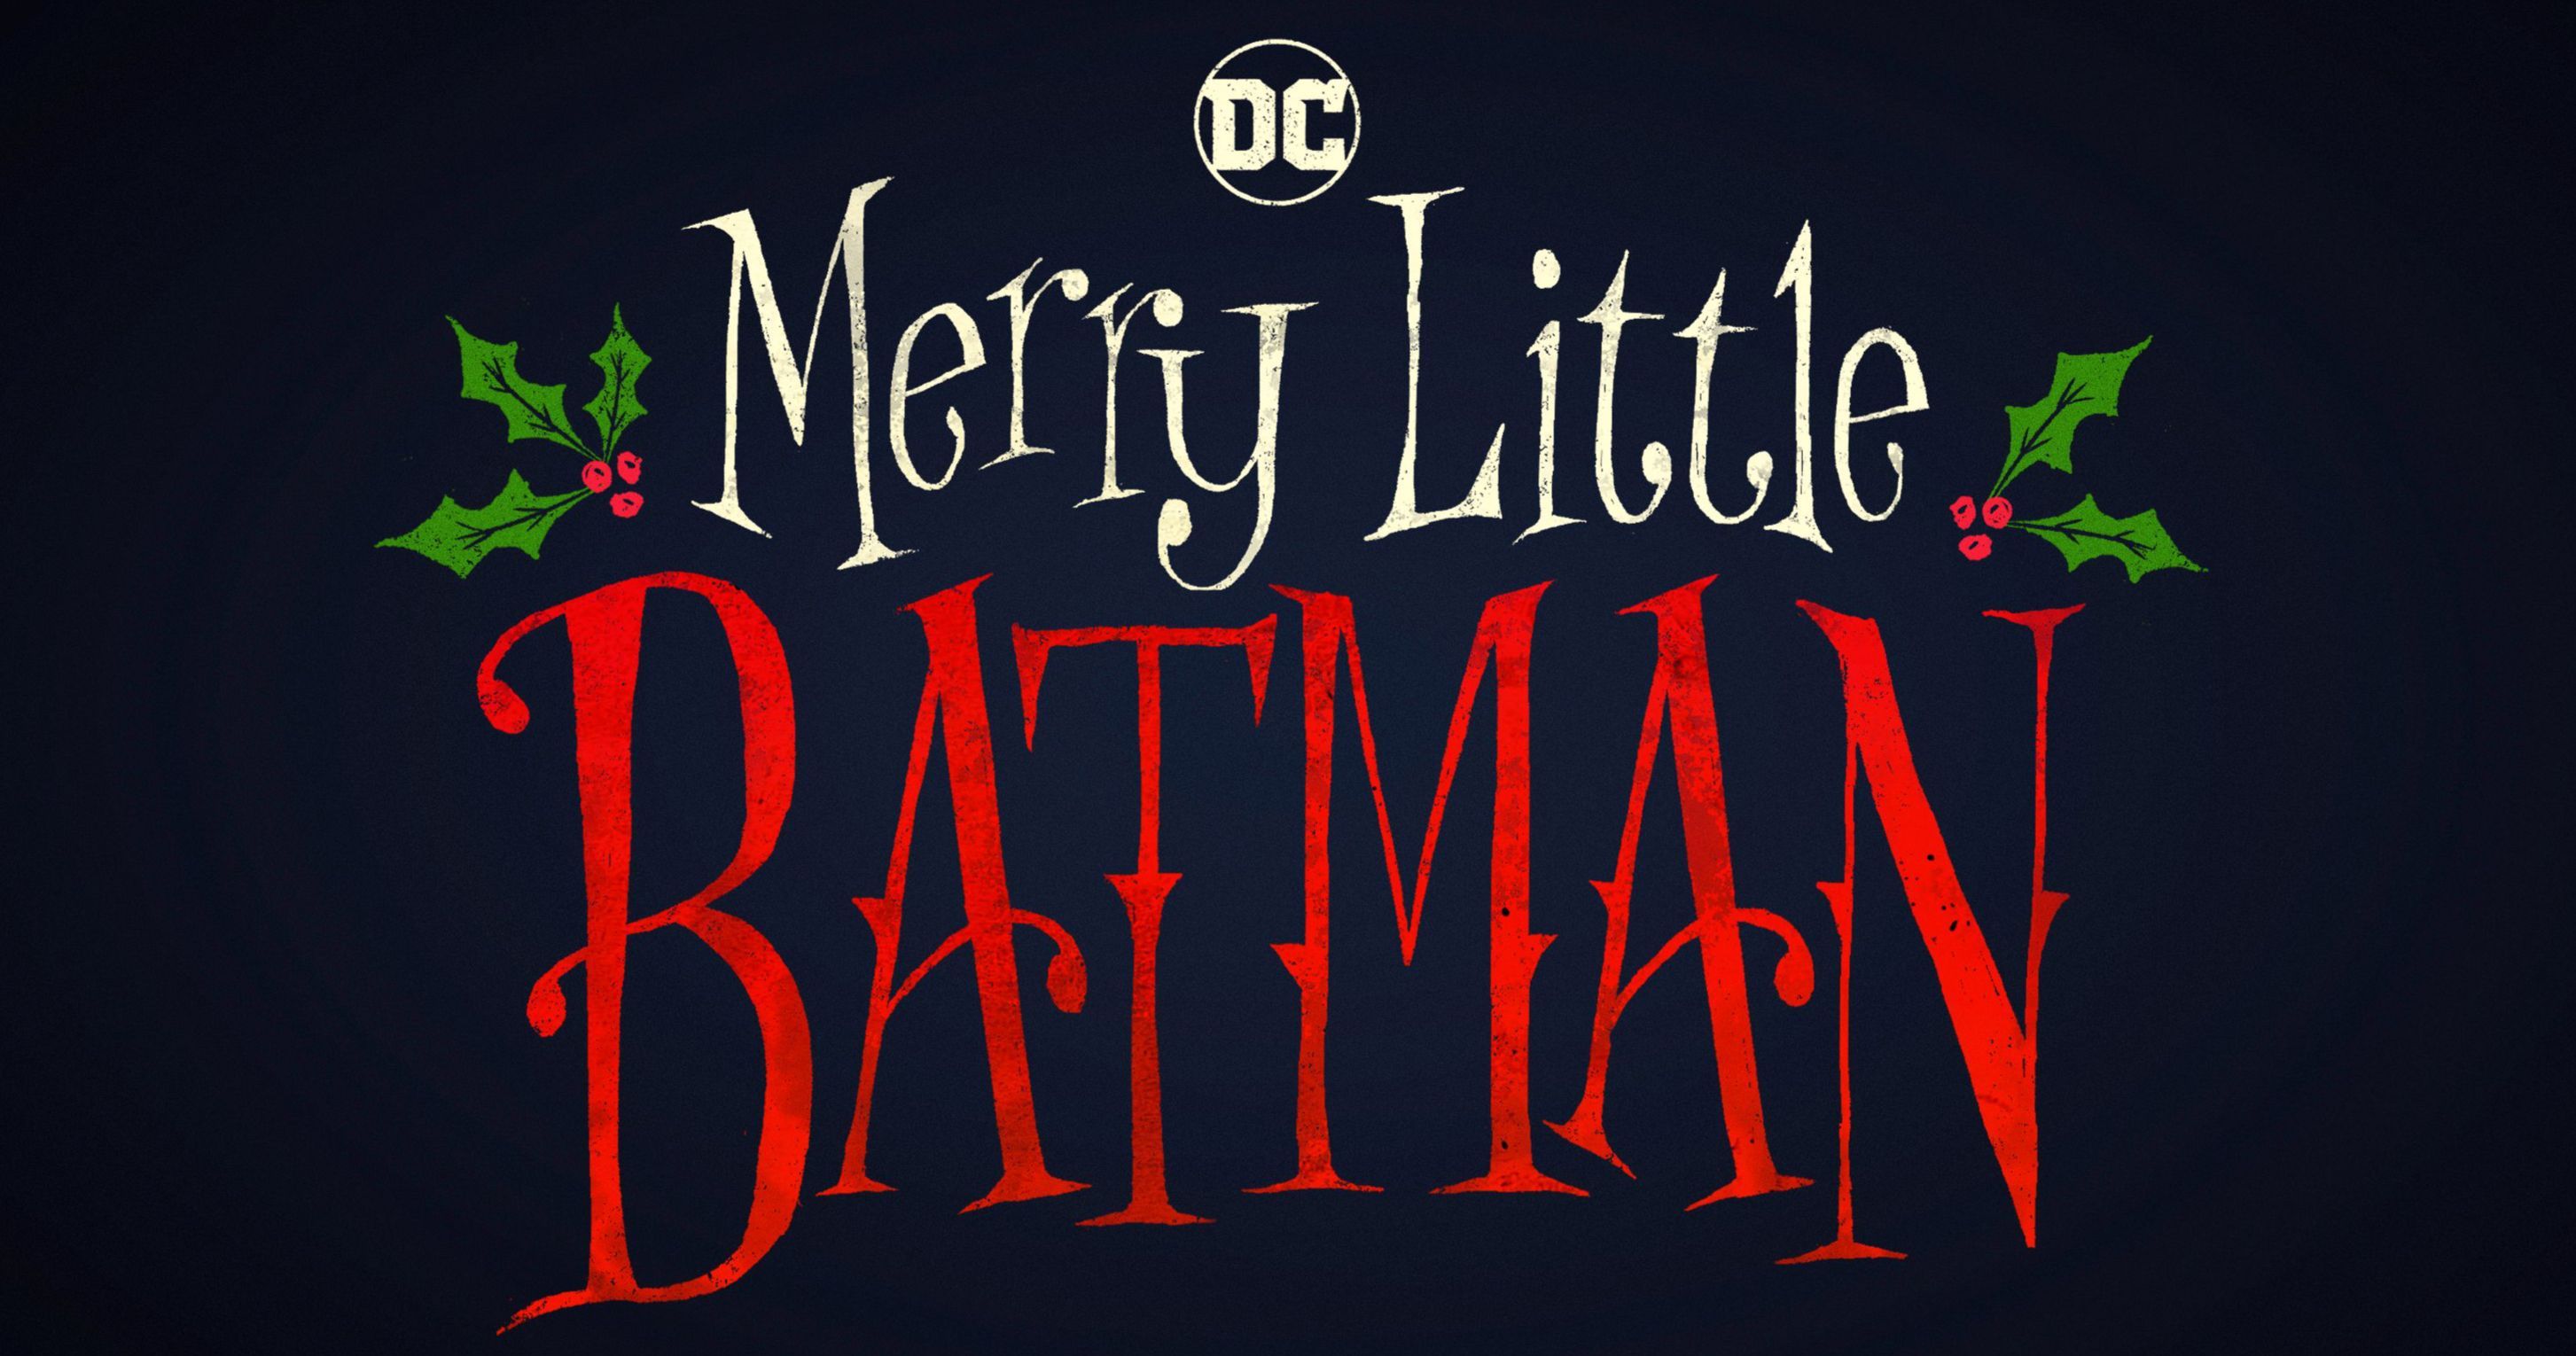 Merry Little Batman